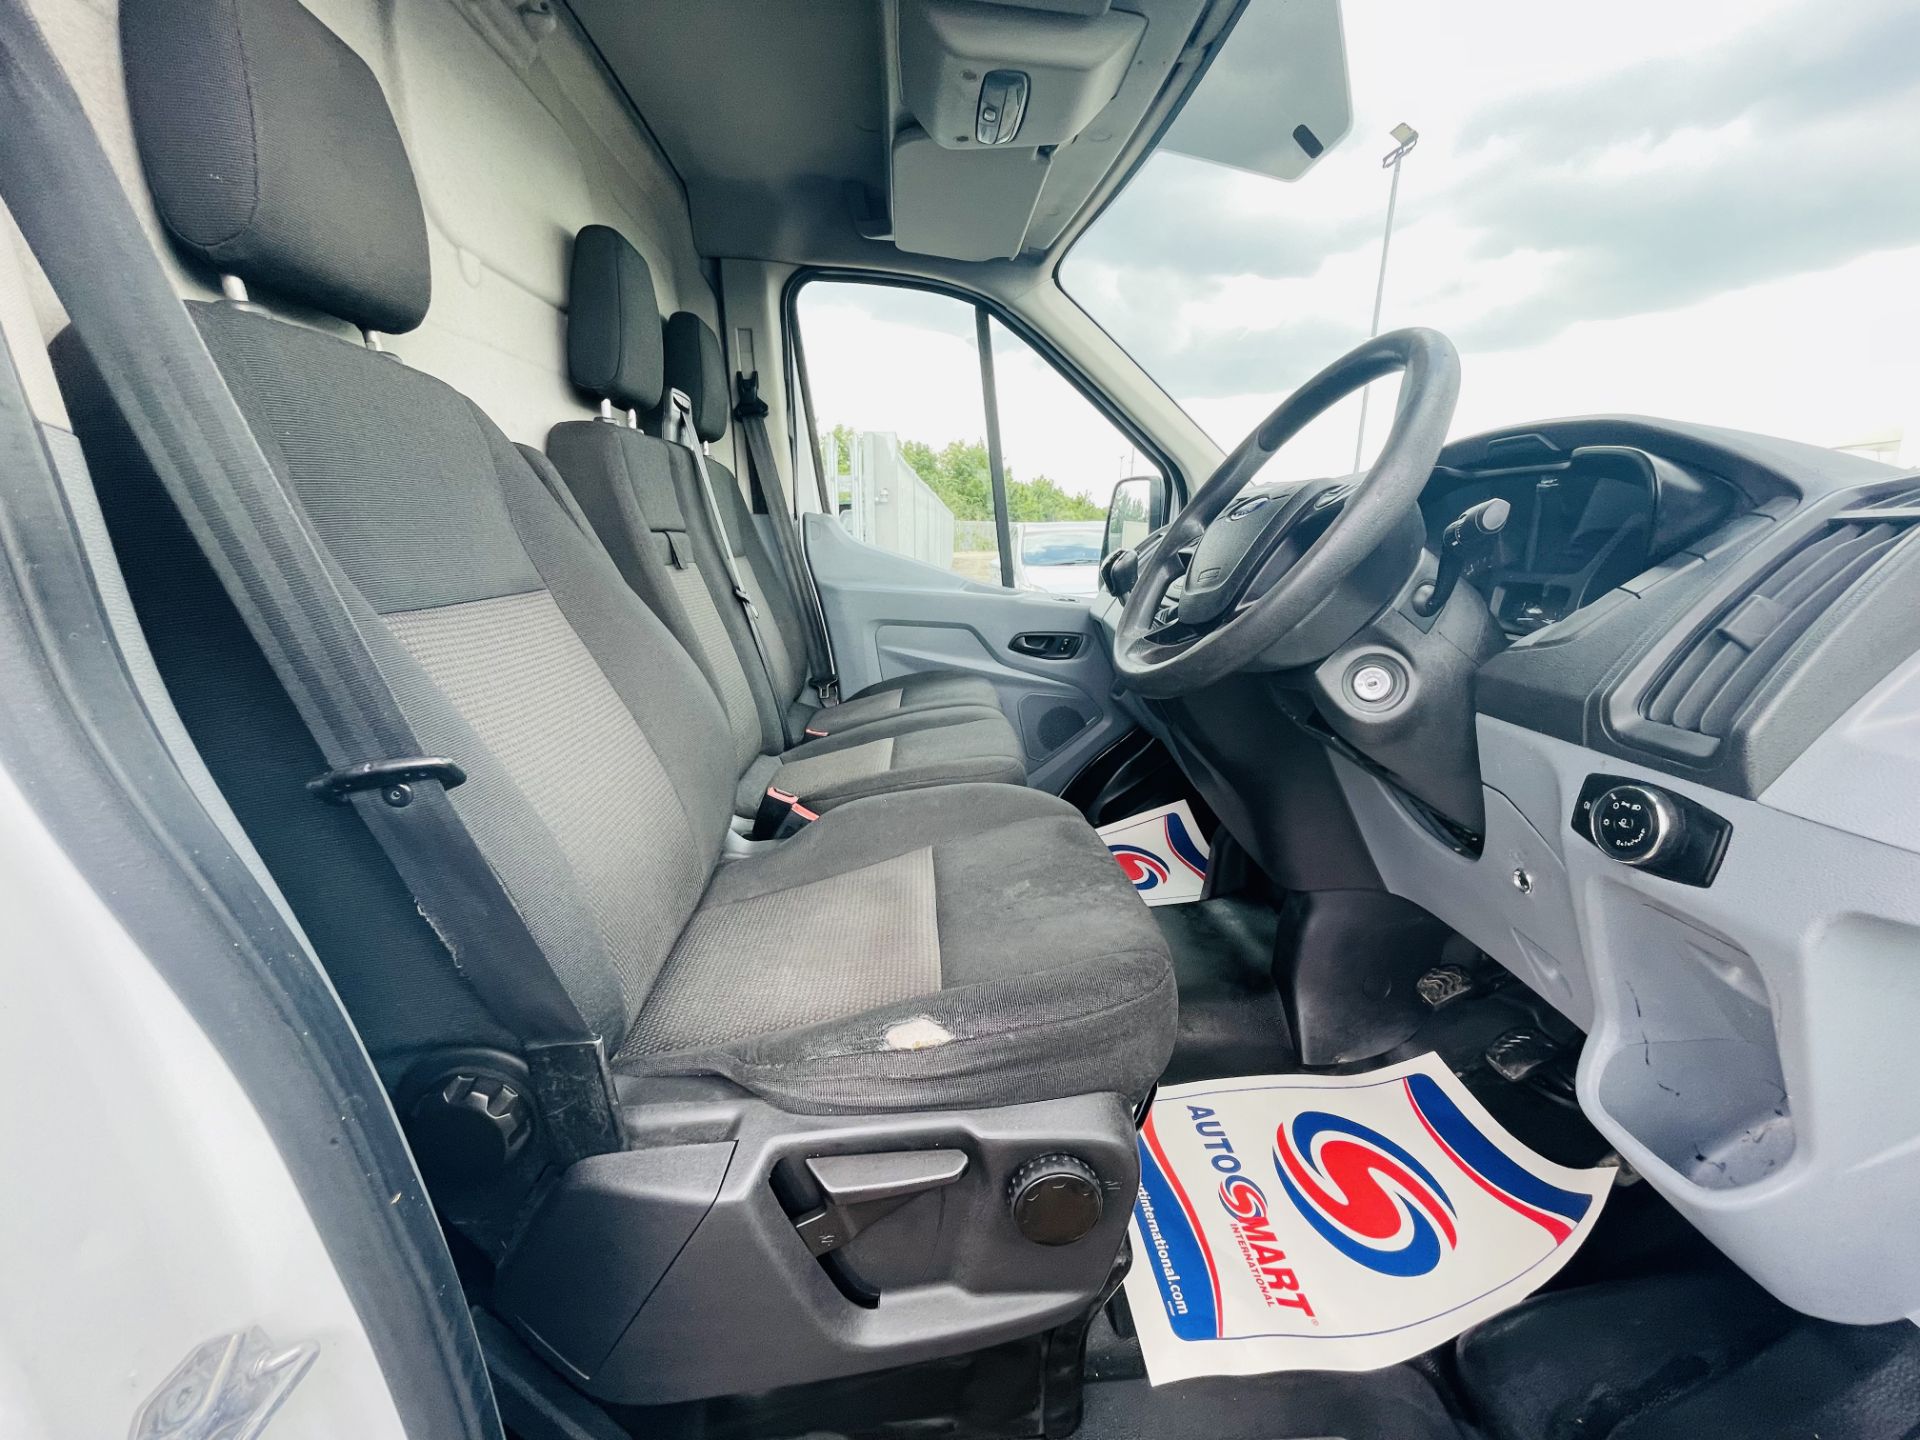 Ford Transit 2.2 TDCI L3 H2 2015 '65 Reg' - Panel Van - LCV - 3 seats - Image 12 of 15